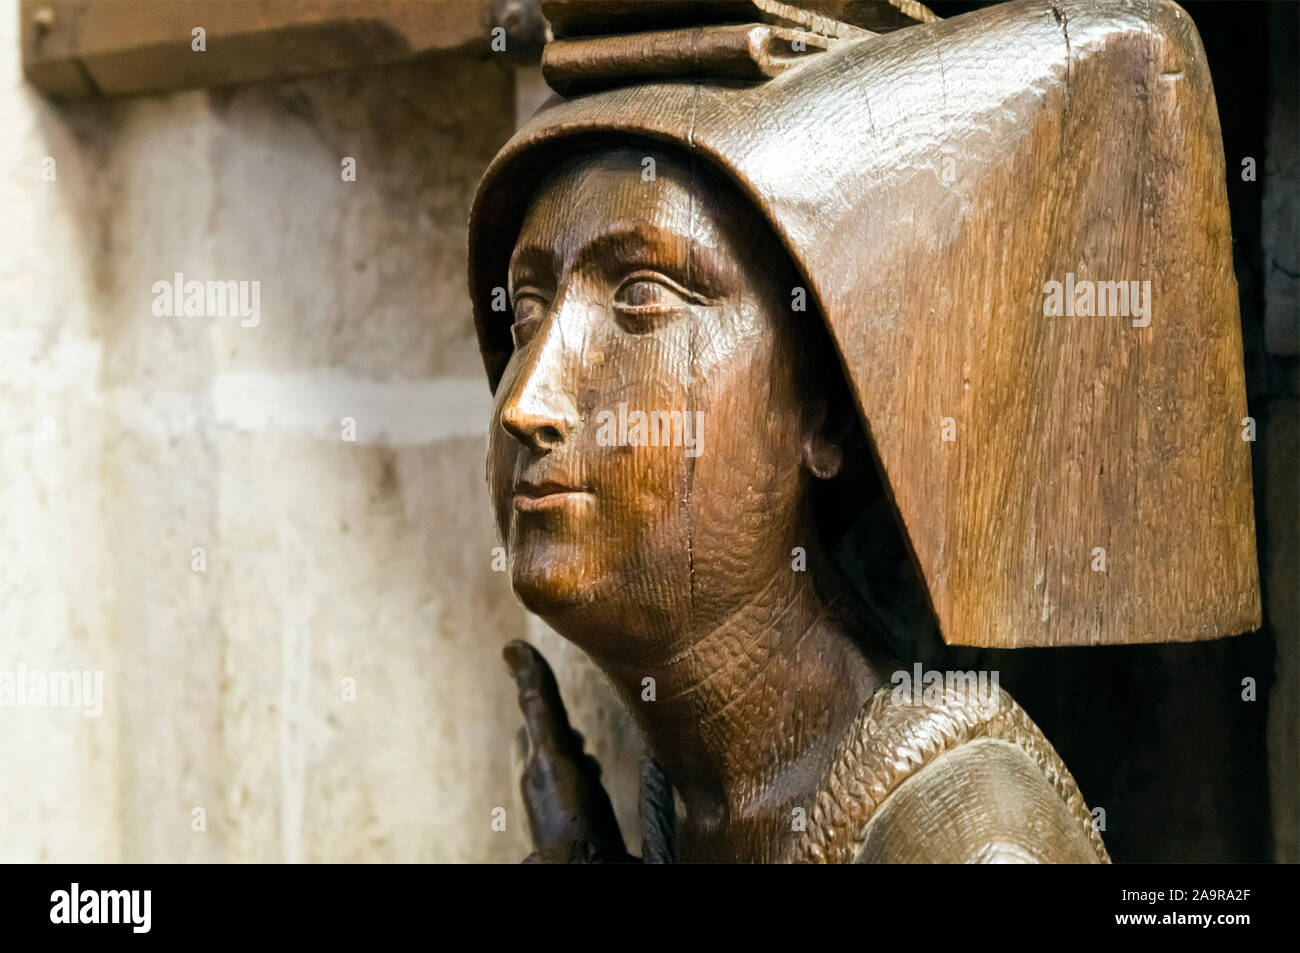 Ein schoener weiblicher Holzkopf in einer Kirche in Ulm, Deutschland Stock Photo